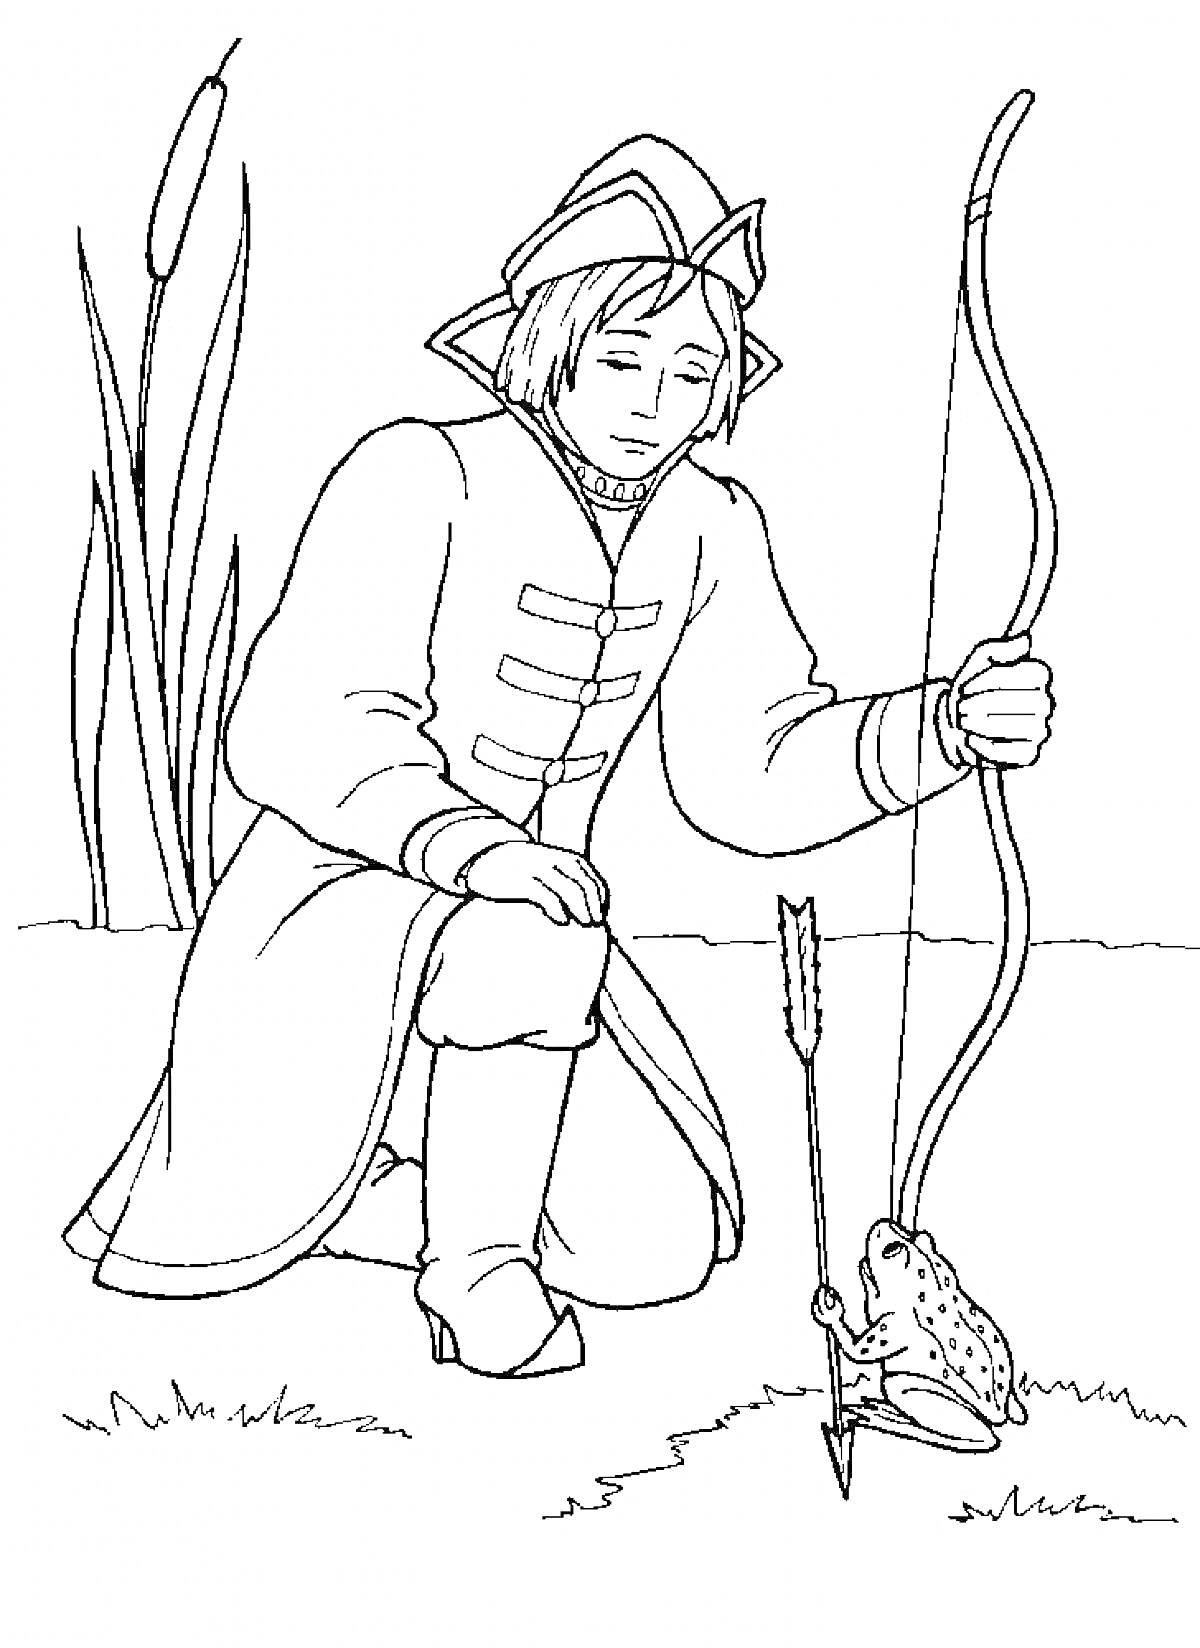 Раскраска Юноша с луком и стрелой рядом с лягушкой на траве, высокие камыши на заднем плане